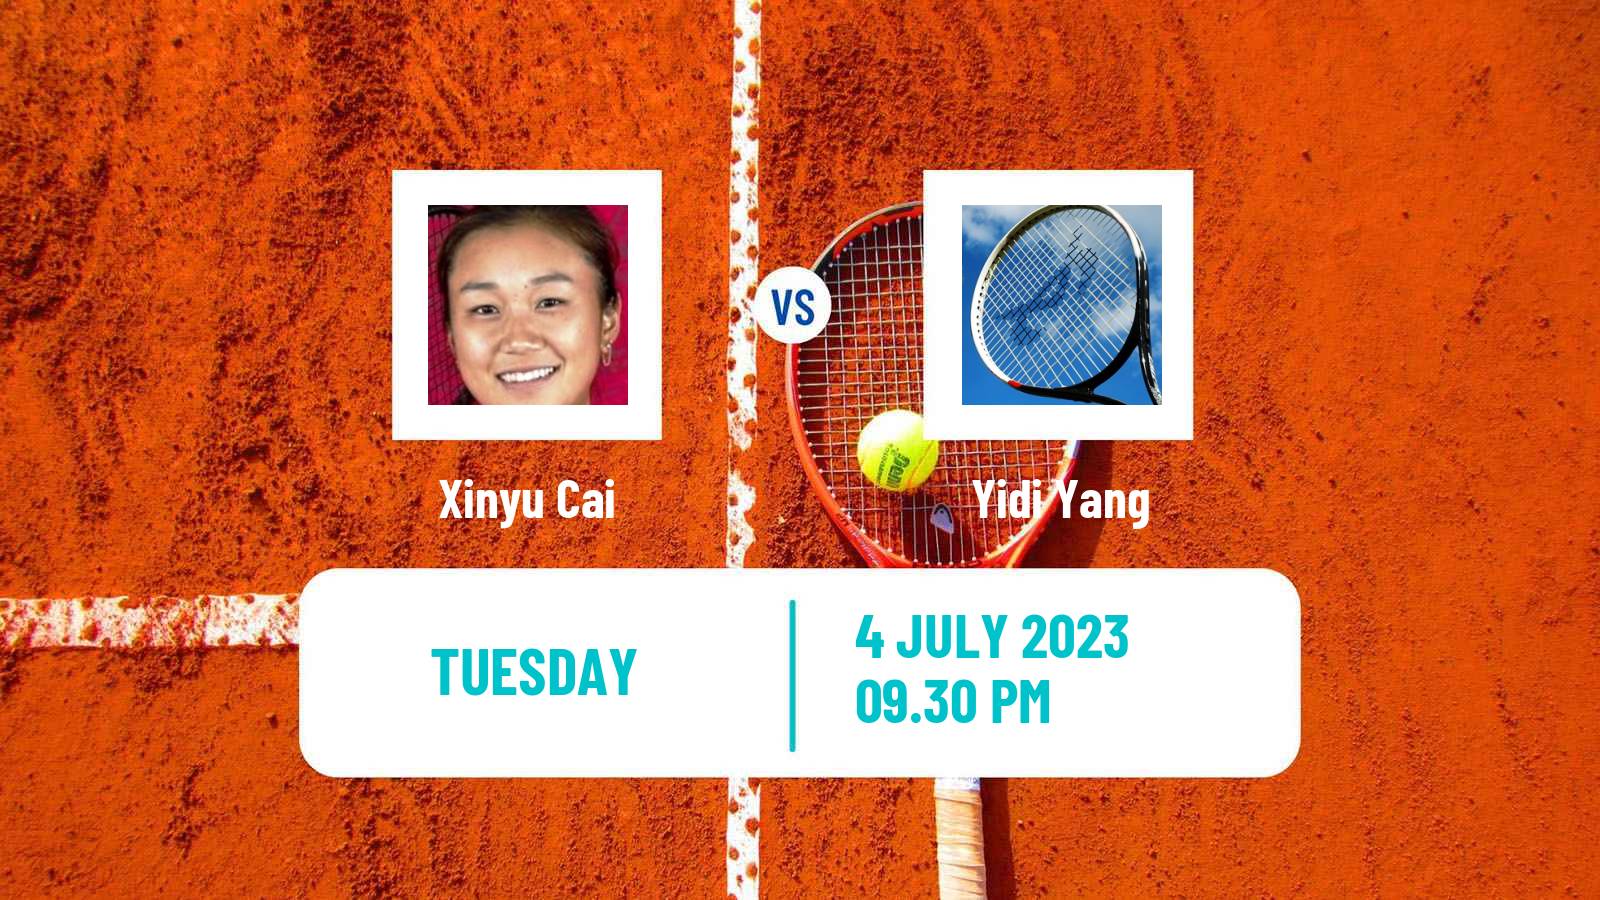 Tennis ITF W15 Tianjin 4 Women Xinyu Cai - Yidi Yang